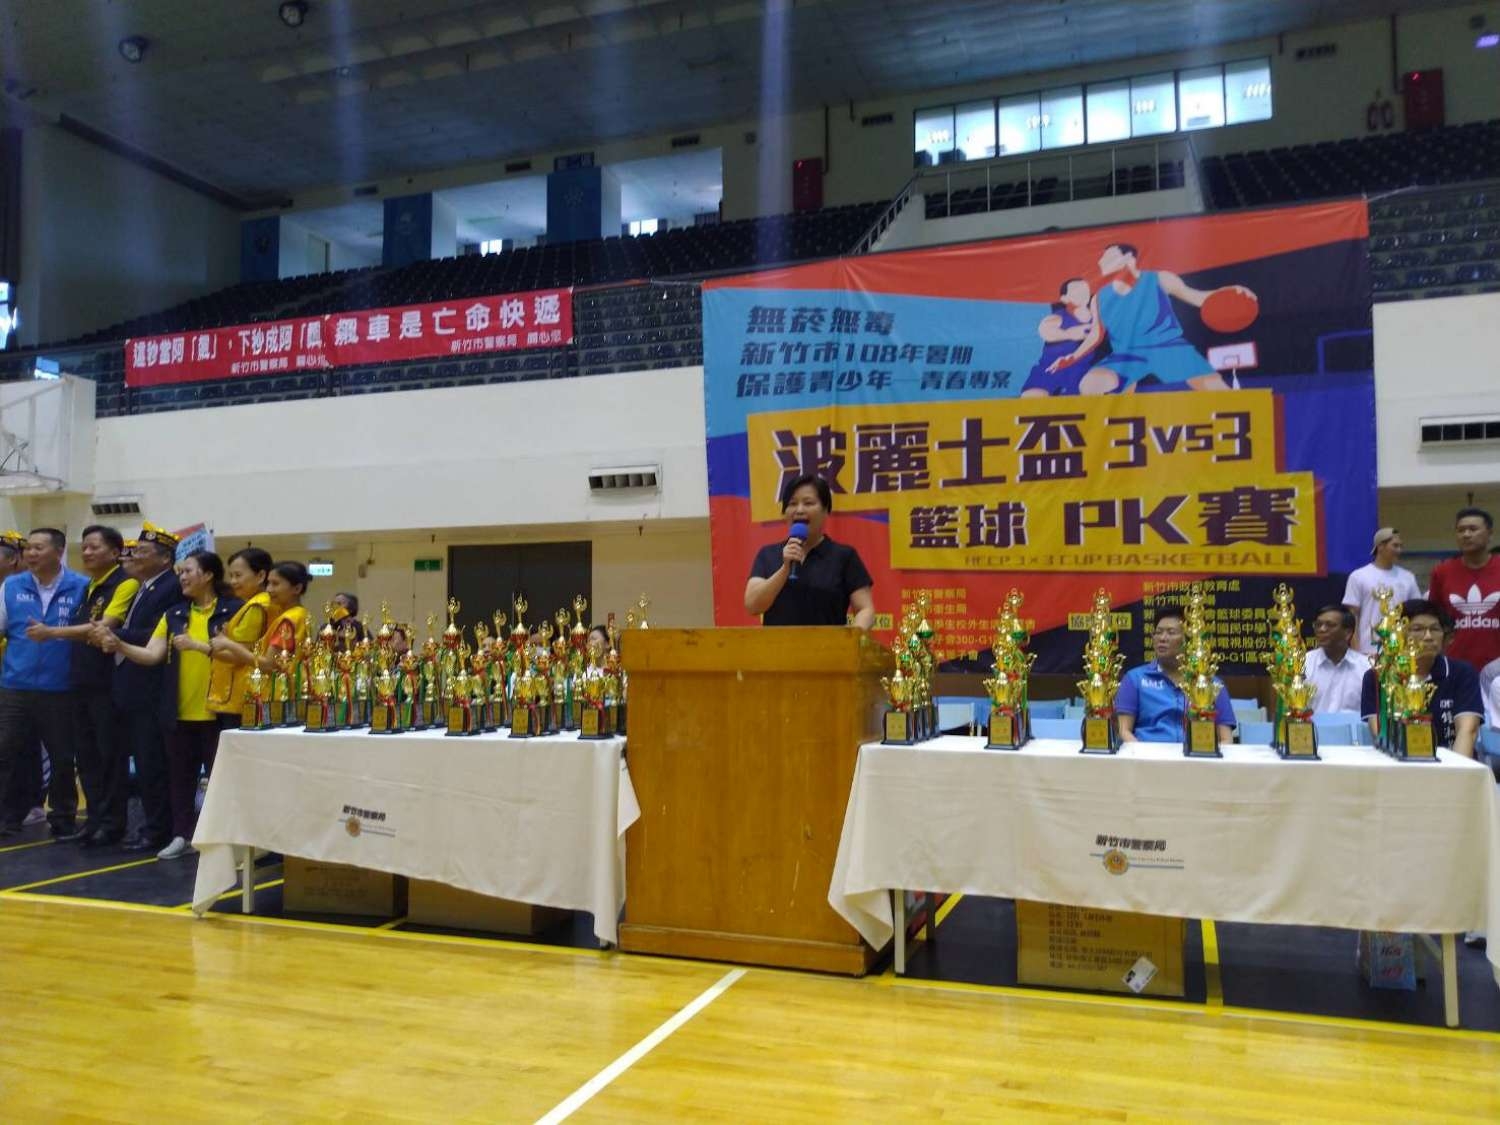 新竹市波麗士盃3對3籃球PK賽 SBL球星網路直播現場、網粉嗨翻天